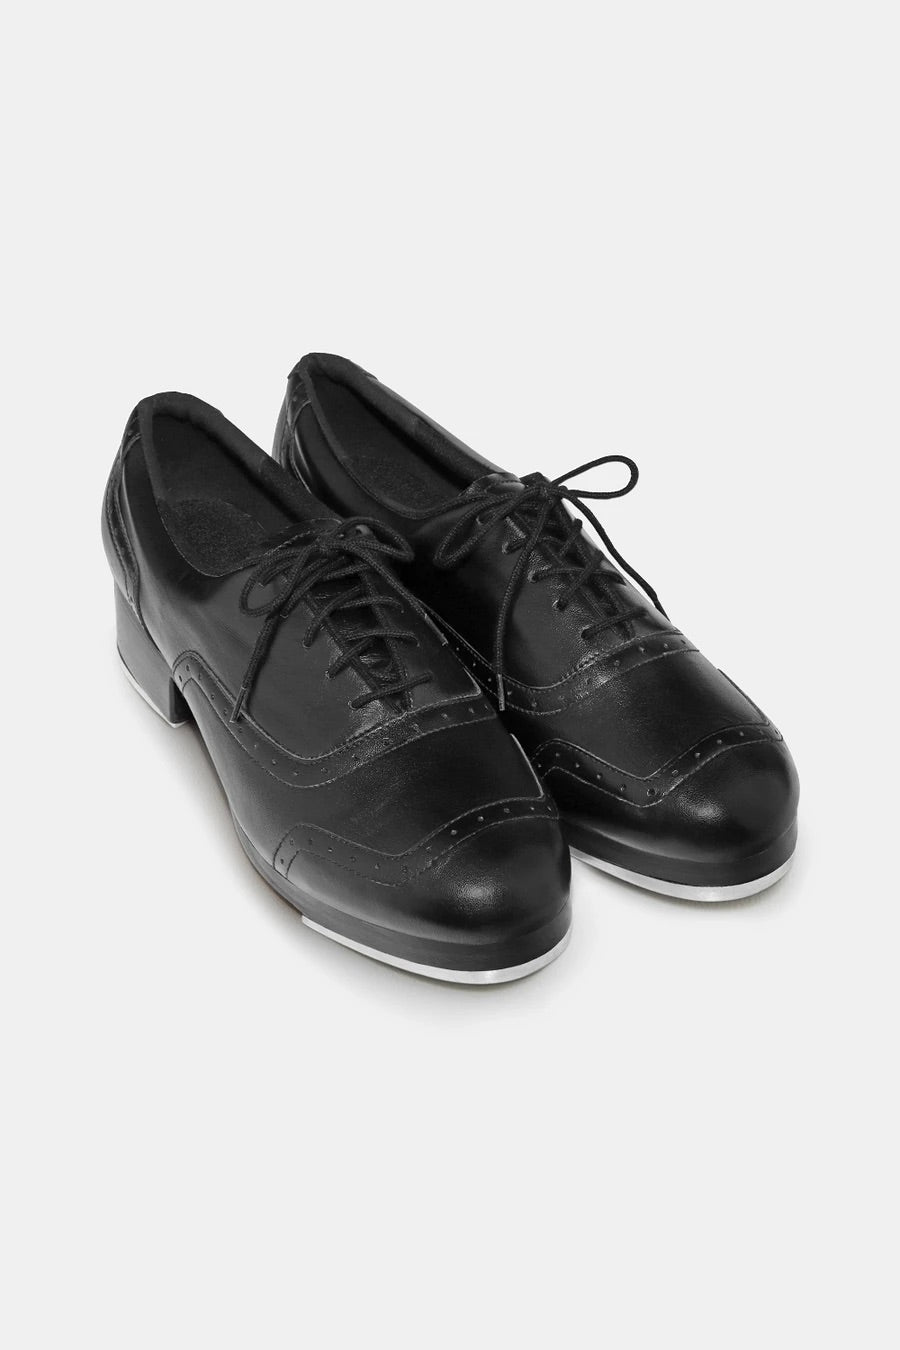 Jason Samuel Smith Black Leather Tap Shoes S0313M